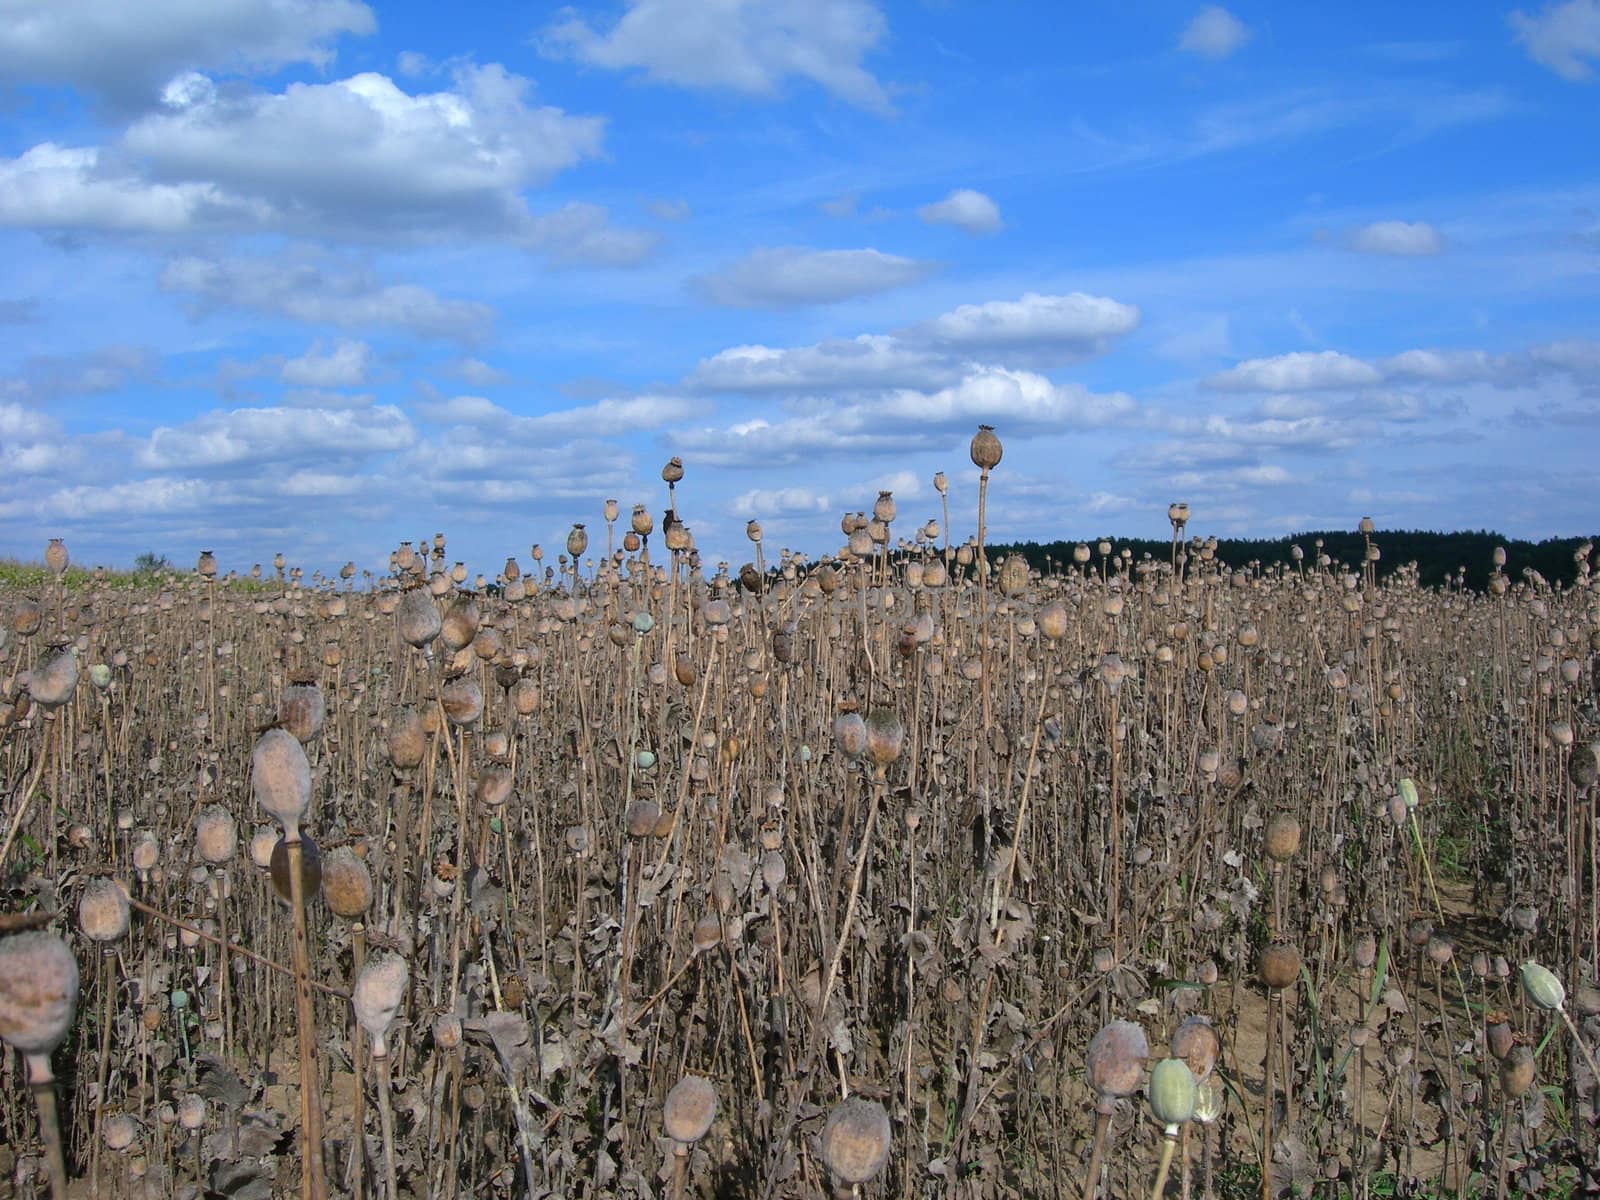 Field with rape poppy with many heads